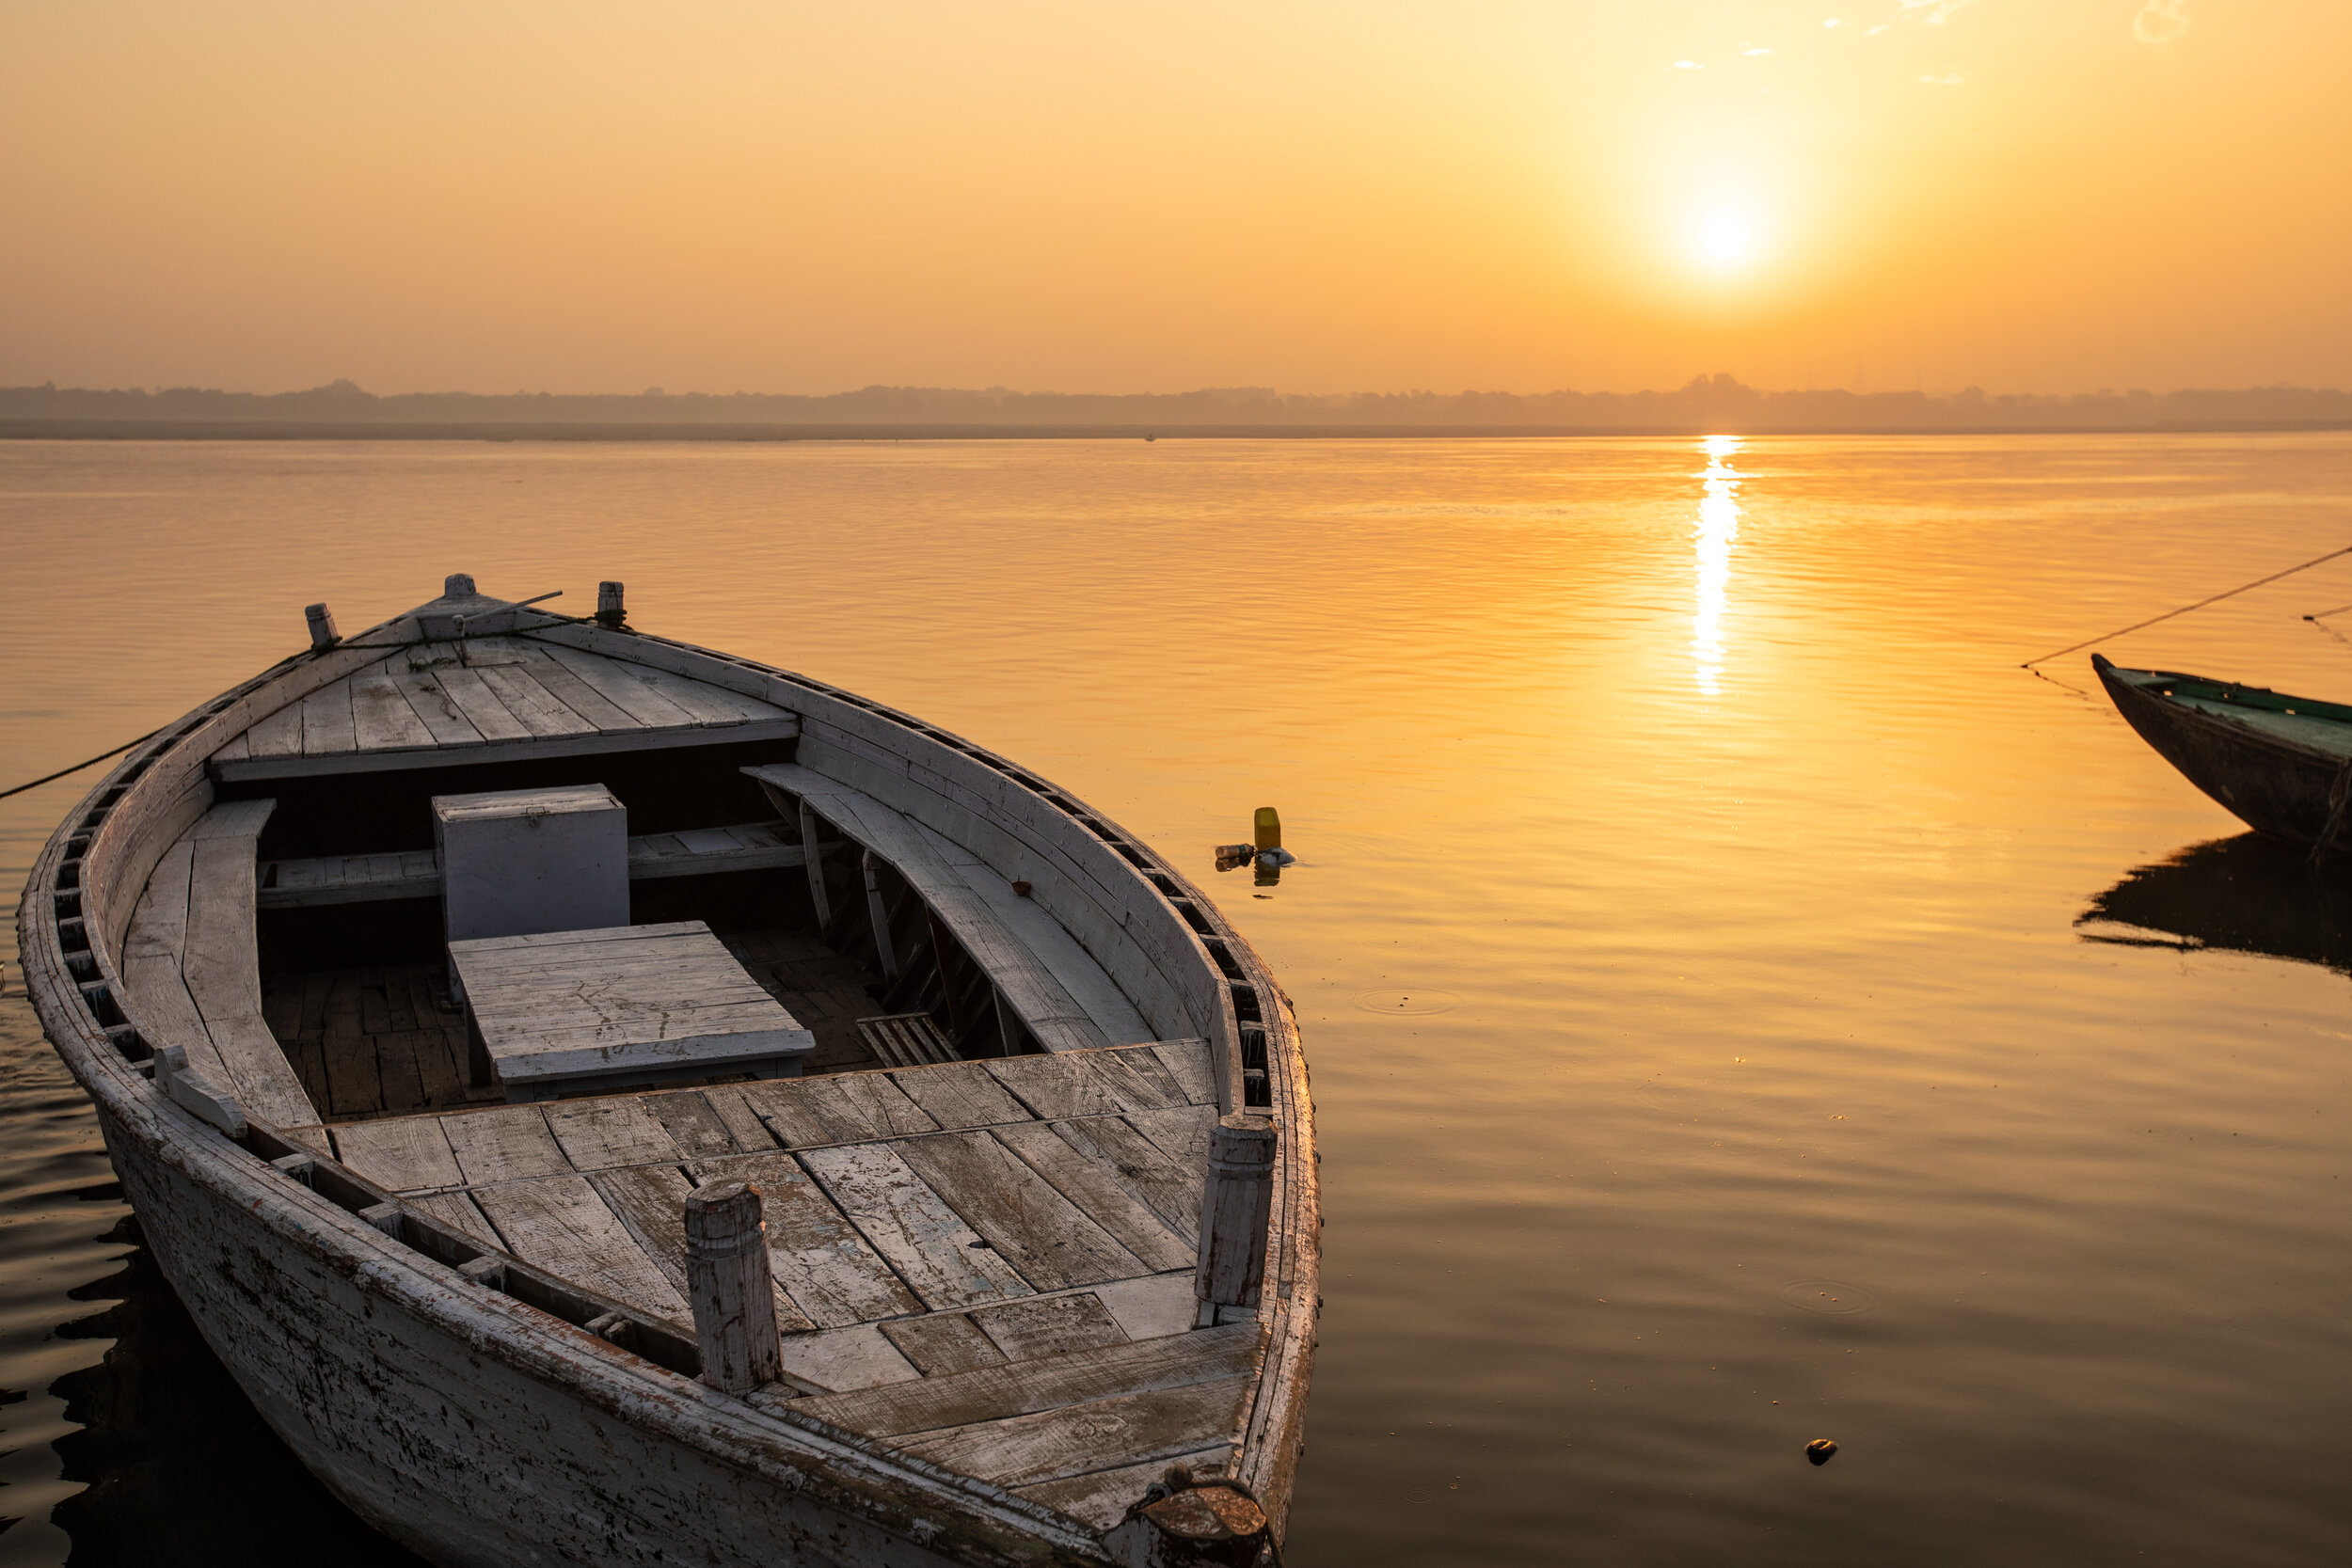 Sunrise over the Ganges River in Uttar Pradesh, India.